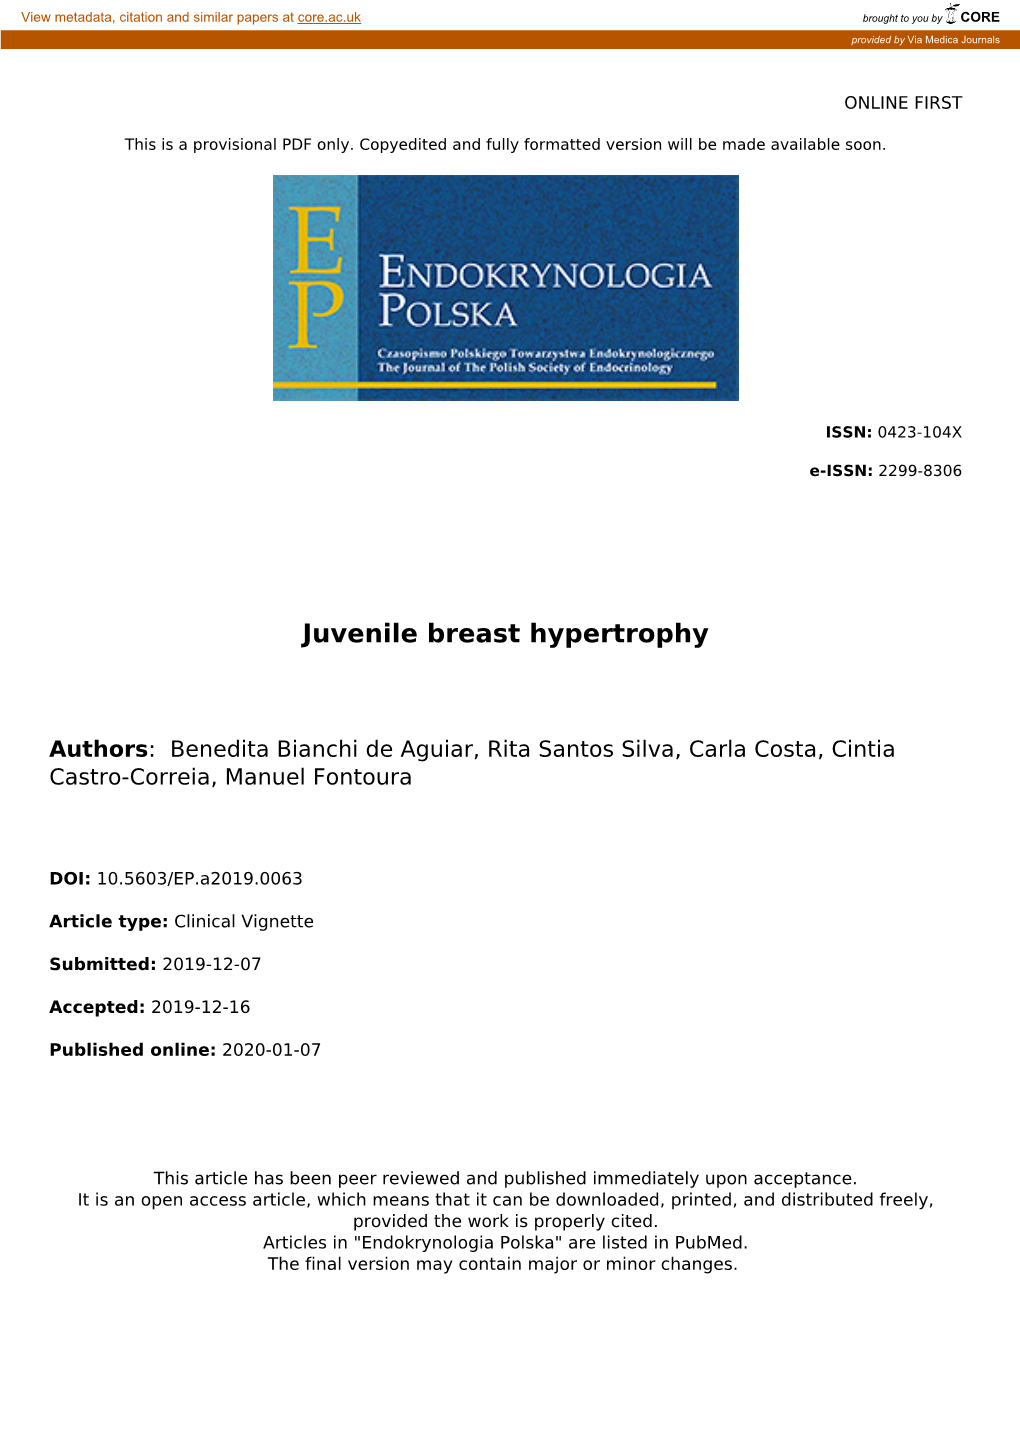 Juvenile Breast Hypertrophy